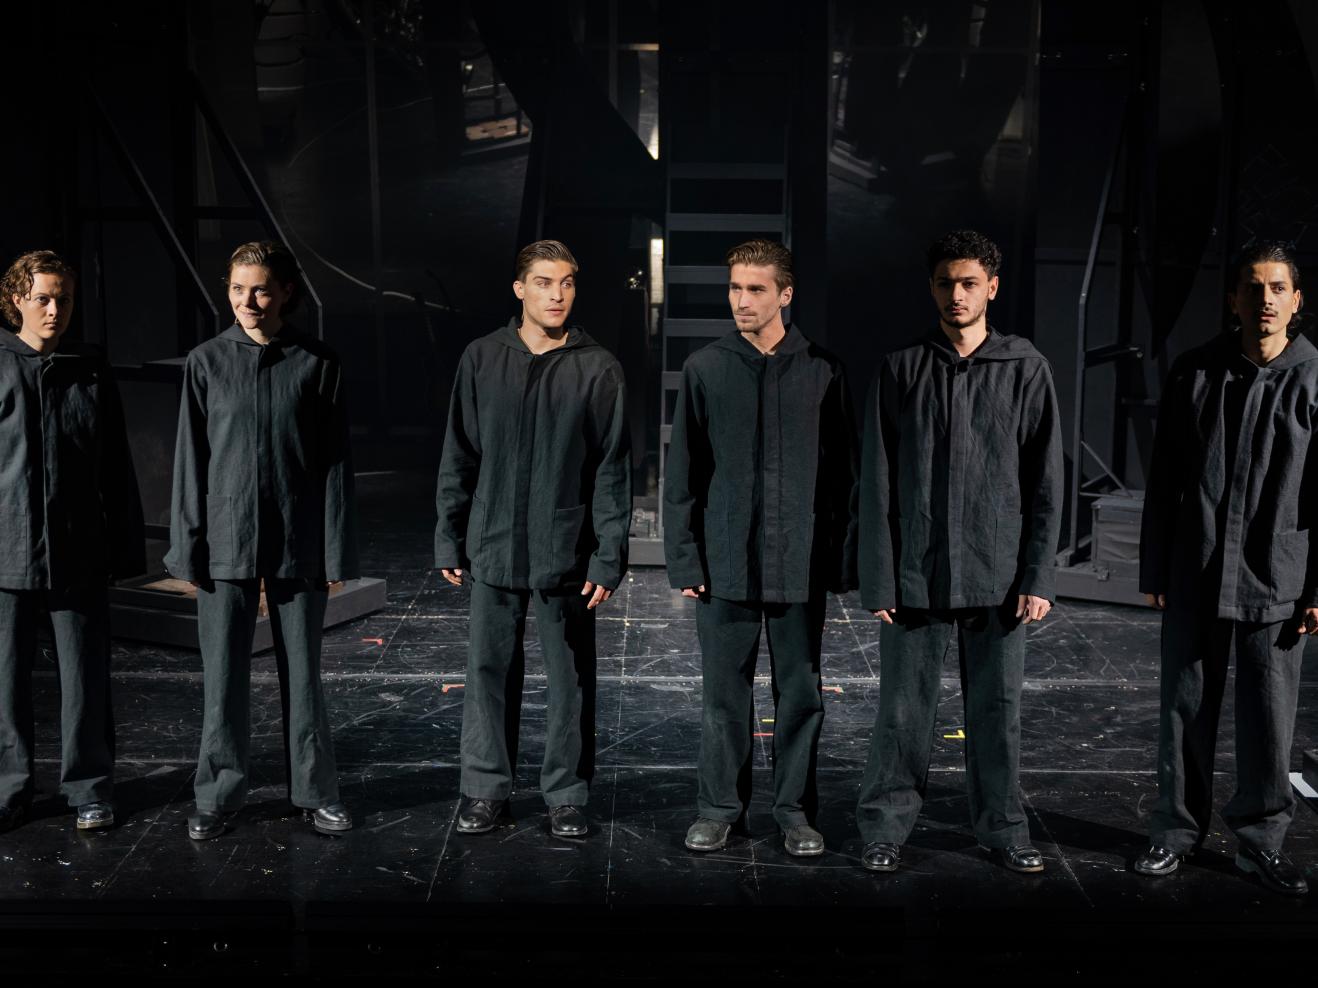 Sechs Schauspielende stehen in schwarz gekleidet nebeneinander auf einer dunklen Bühne.